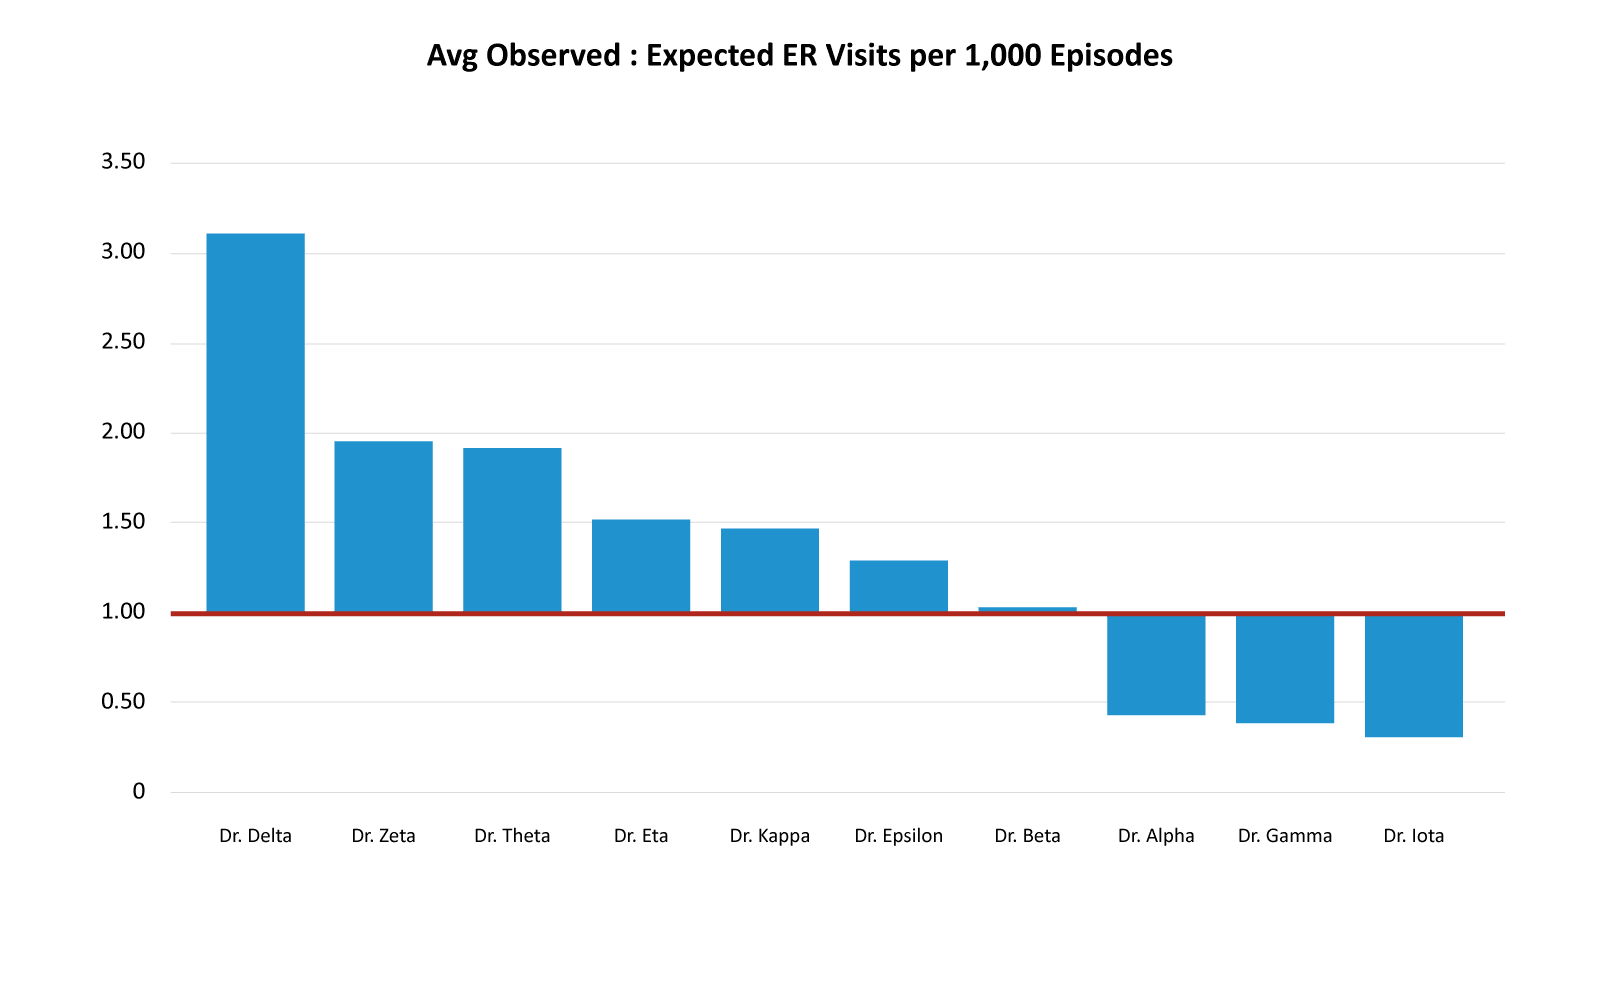 Avg Observed: Expected ER Visits per 1K Episodes